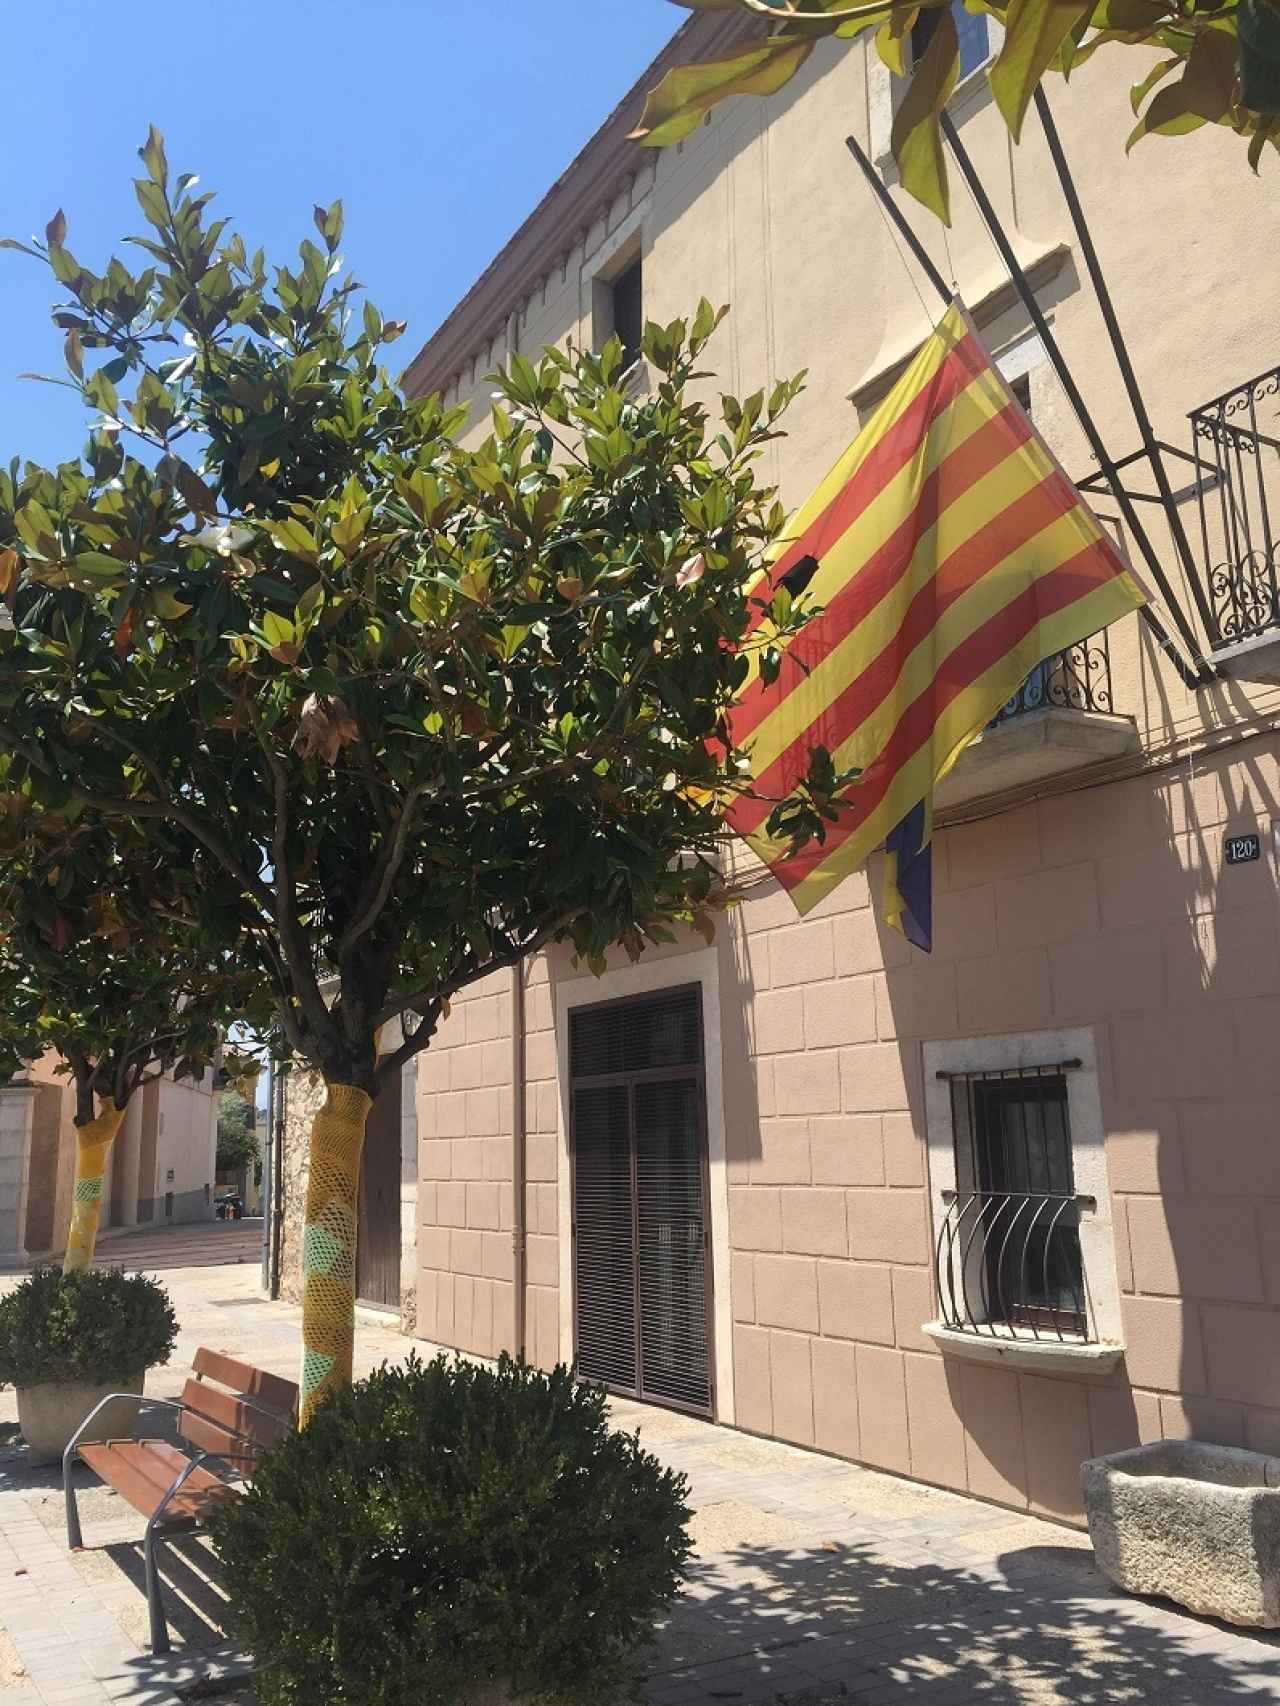 En Vilablareix no hay bandera española, la catalana está a media asta, tiene crespón negro de luto, y los árboles tienen fundas amarillas de ganchillo